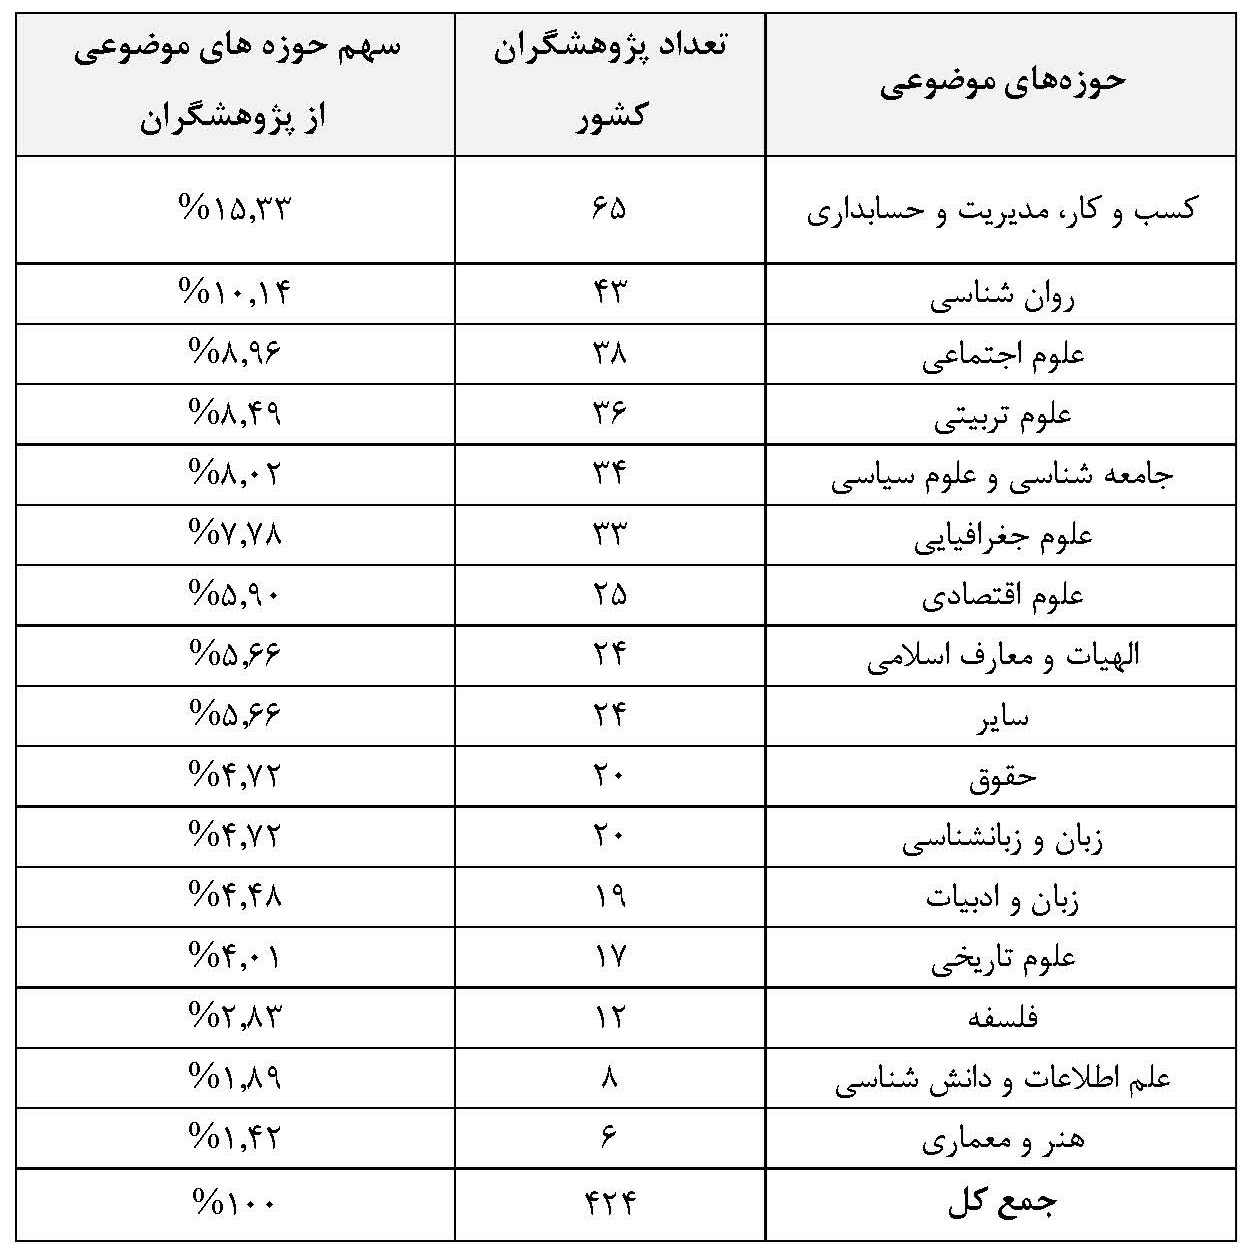 ۴۲۴ پژوهشگر ایرانی در زمره پژوهشگران پراستناد برتر علوم انسانی